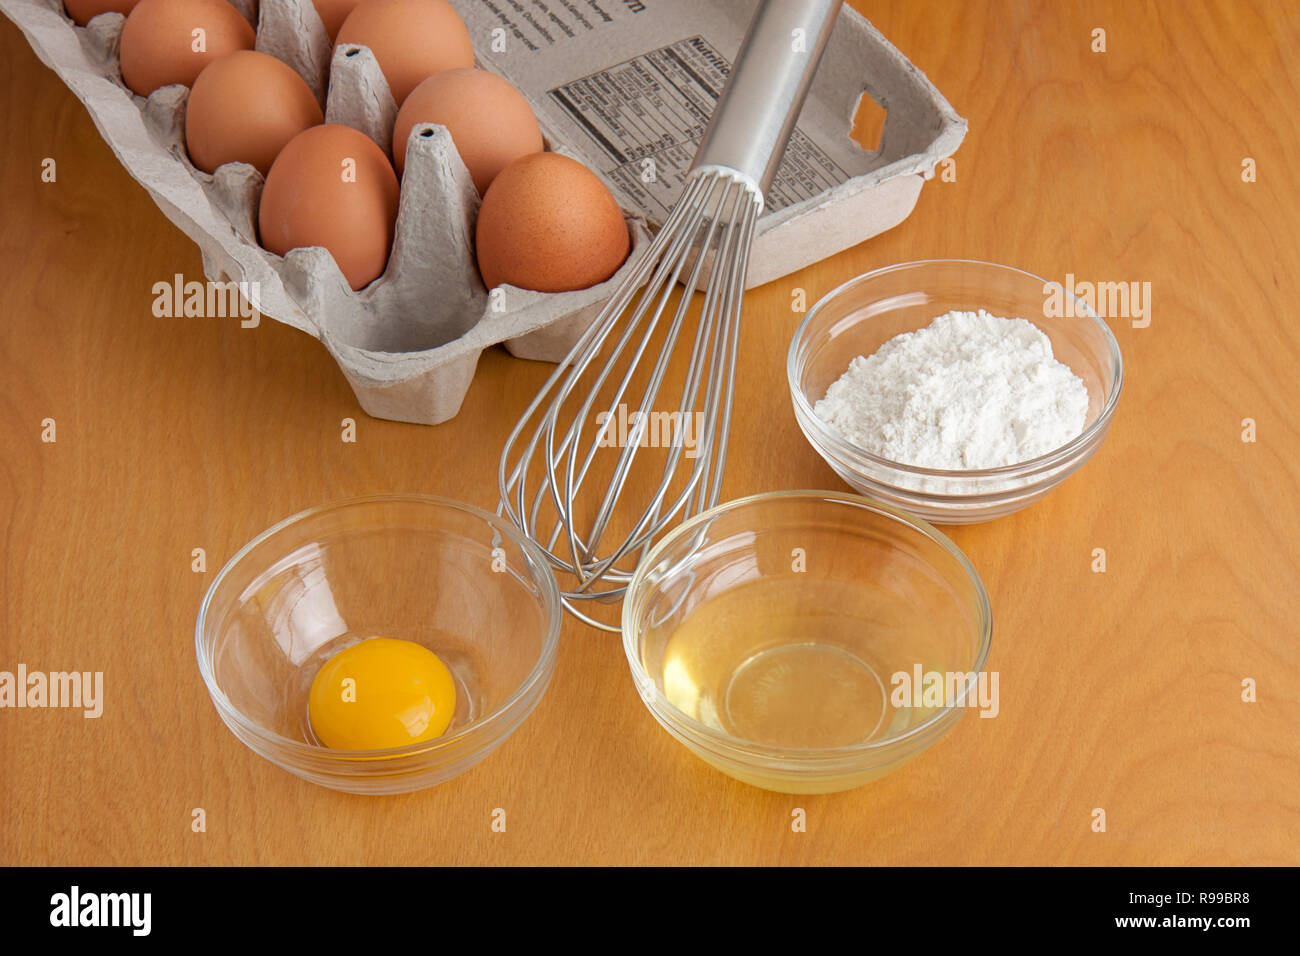 Separate le uova incrinate in ciotole in vetro, la farina in una ciotola di vetro, una frusta di argento, e il cartone di uova tutte su un tagliere. Foto Stock